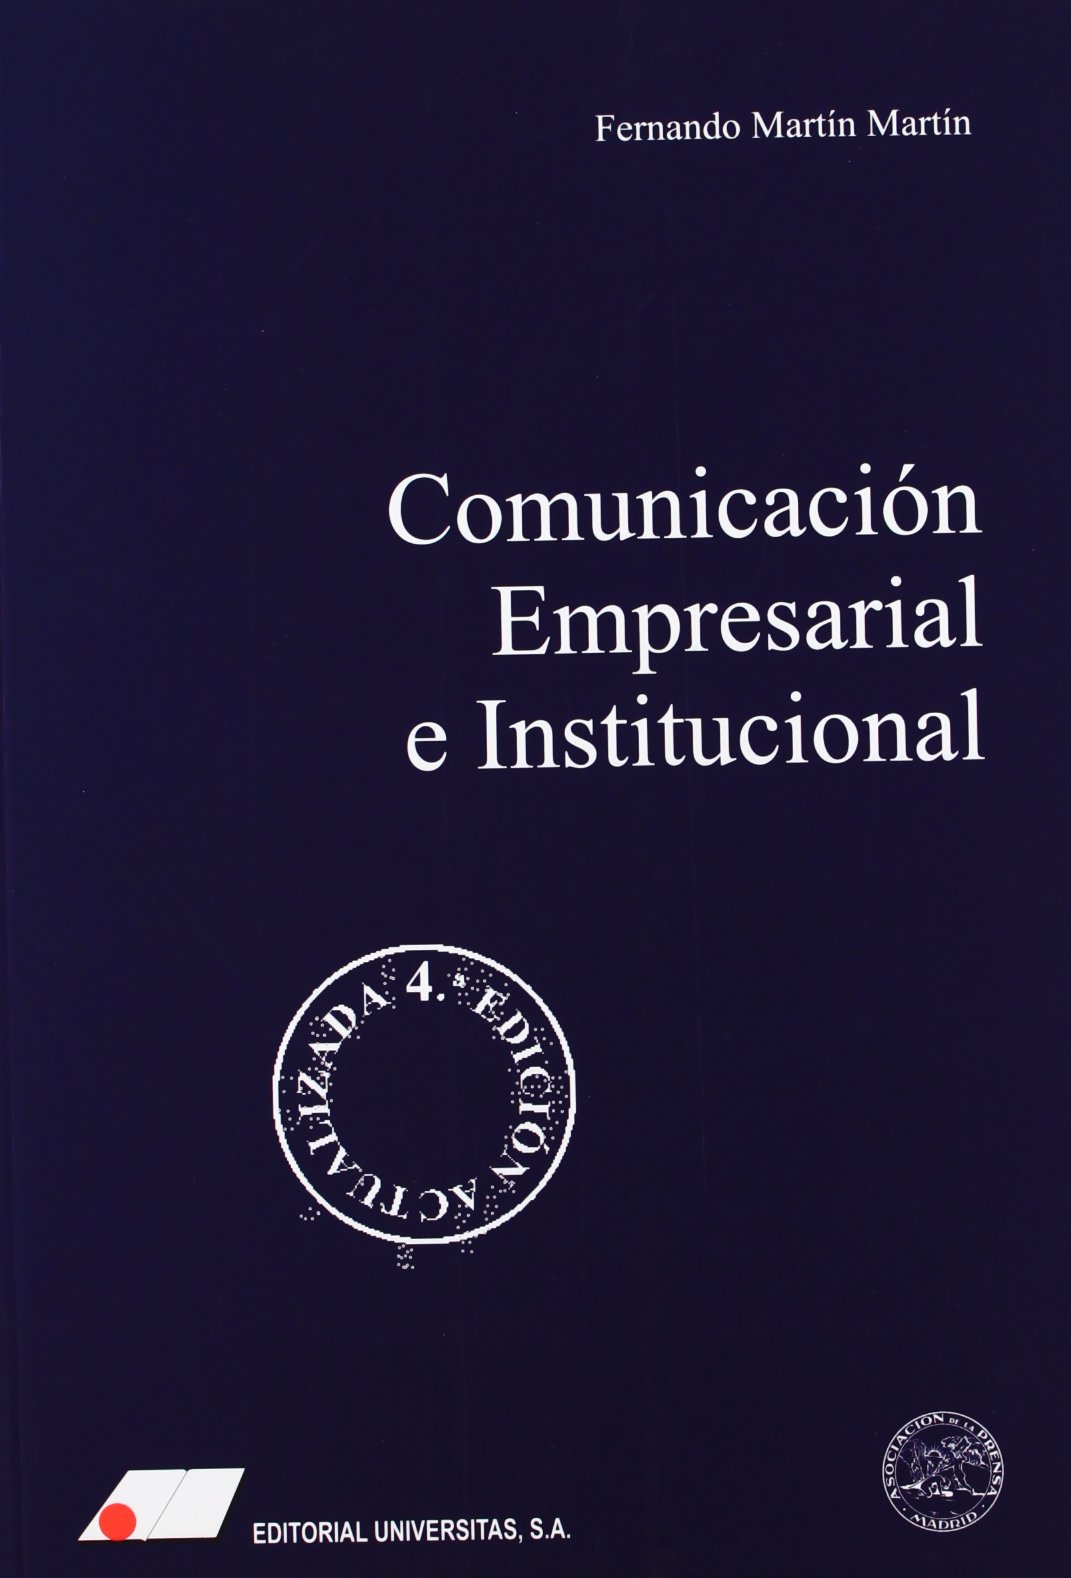 Comunicación empresarial (corporativa) e institucional